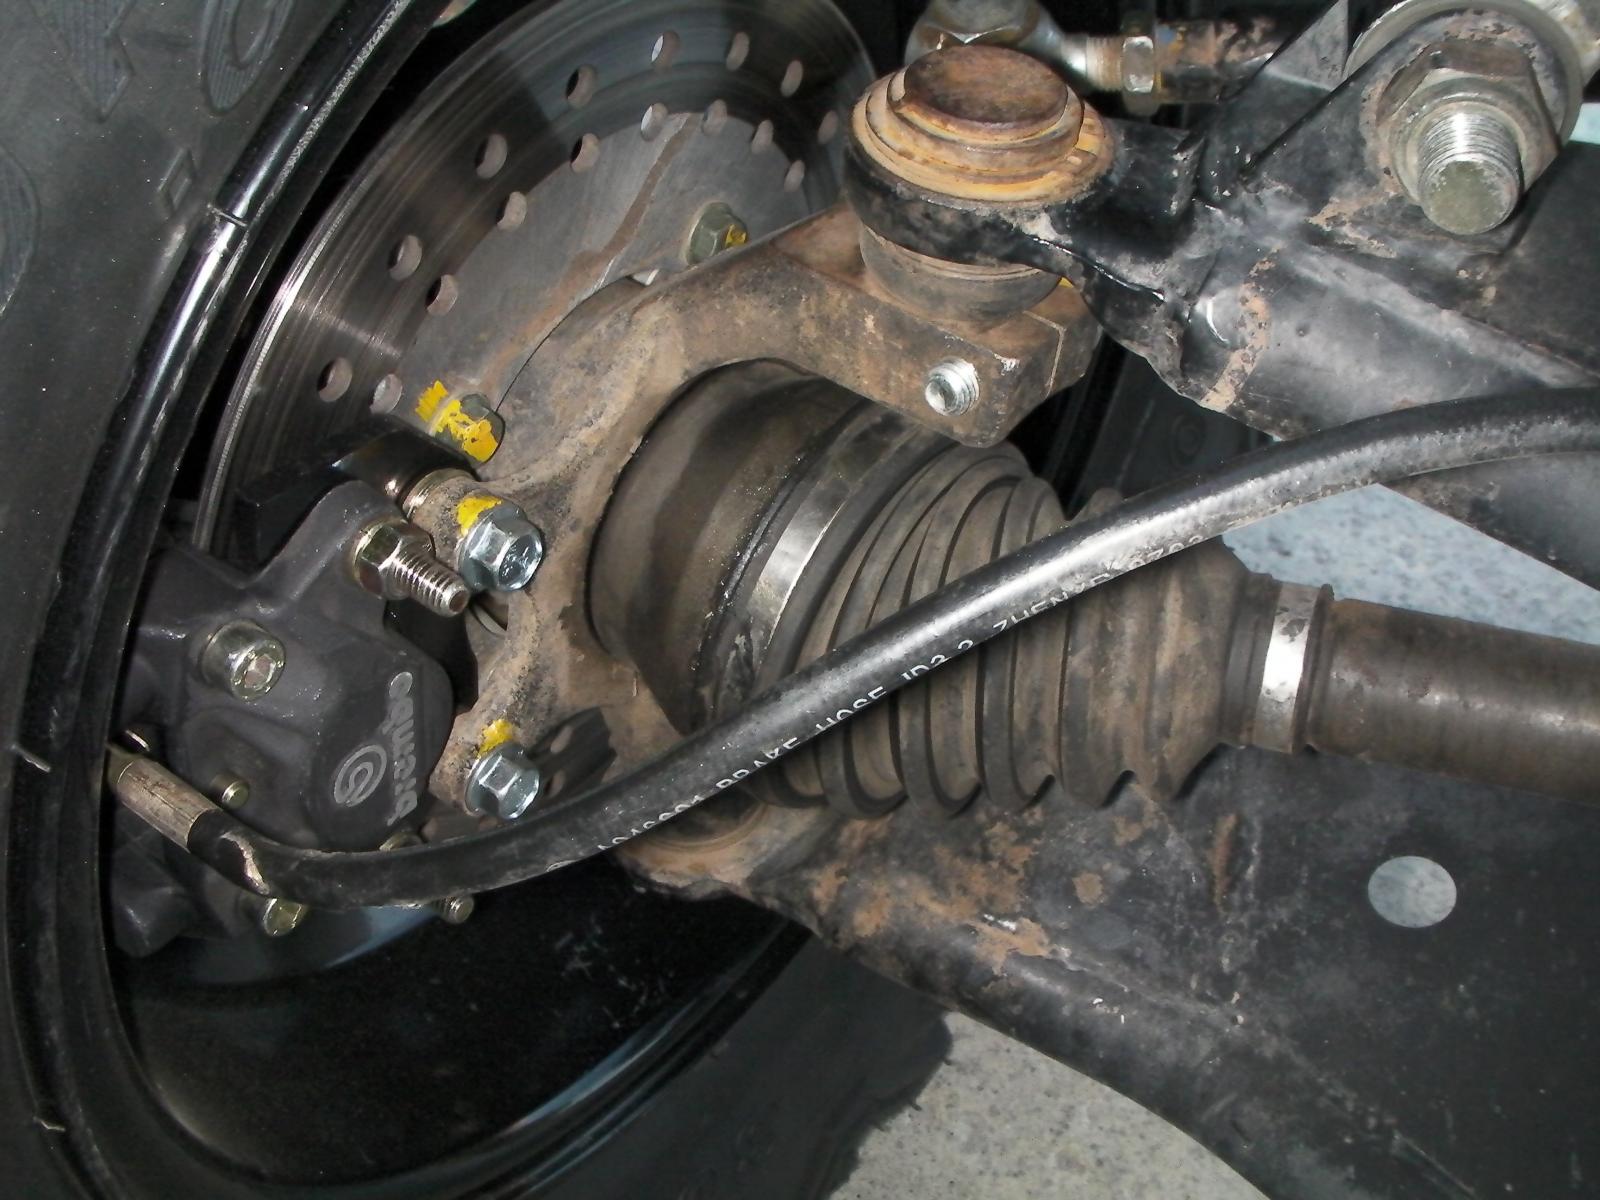 Brembo front brakes